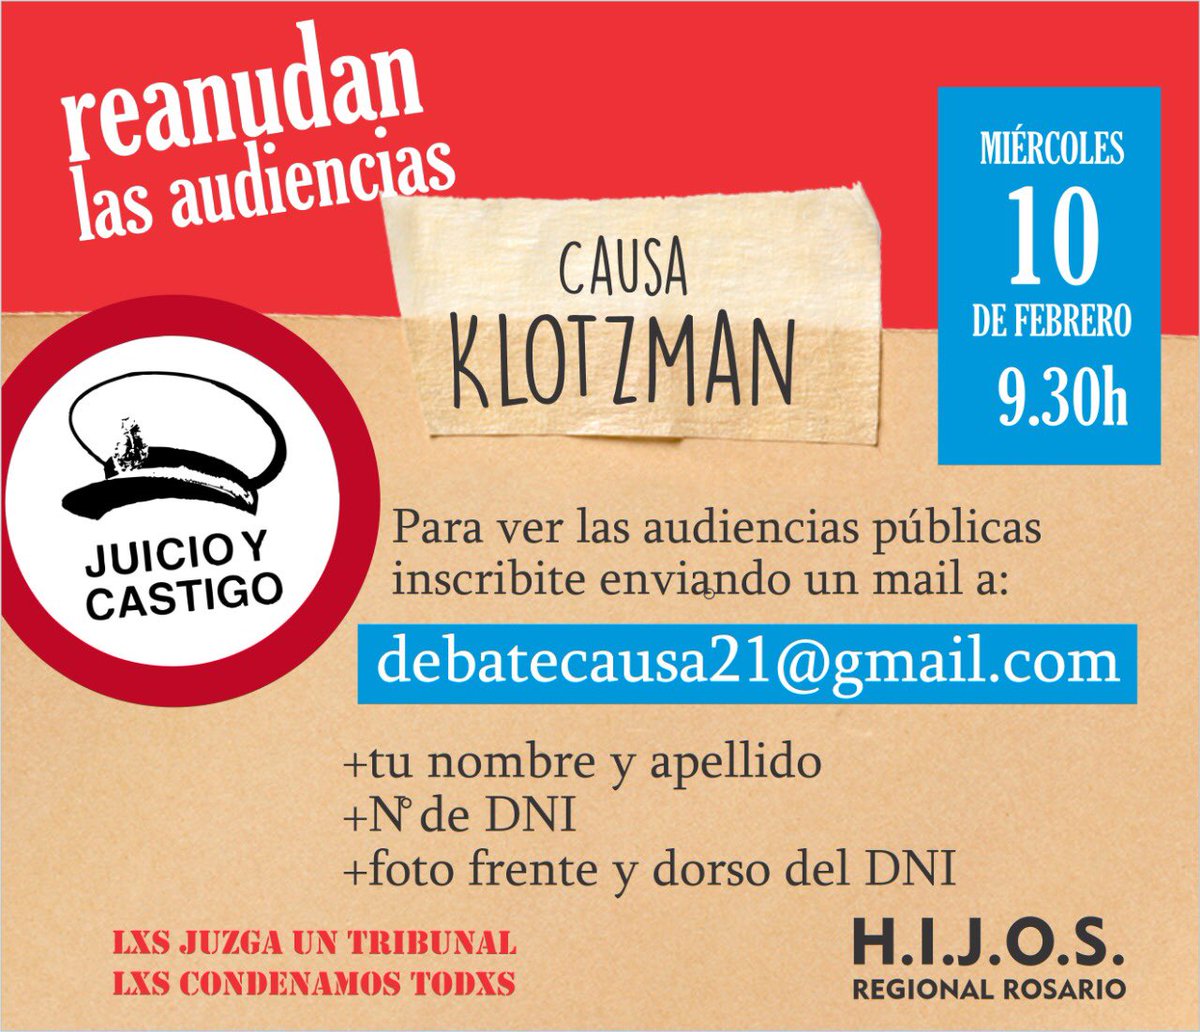 Esta semana miércoles 10/02 se retoman las audiencias de la #CausaKlotzman. Para presenciar las audiencias inscribite enviando un mail a debatecausa21@gmail.com #LesaHumanidad #JuiciosaGenocidas